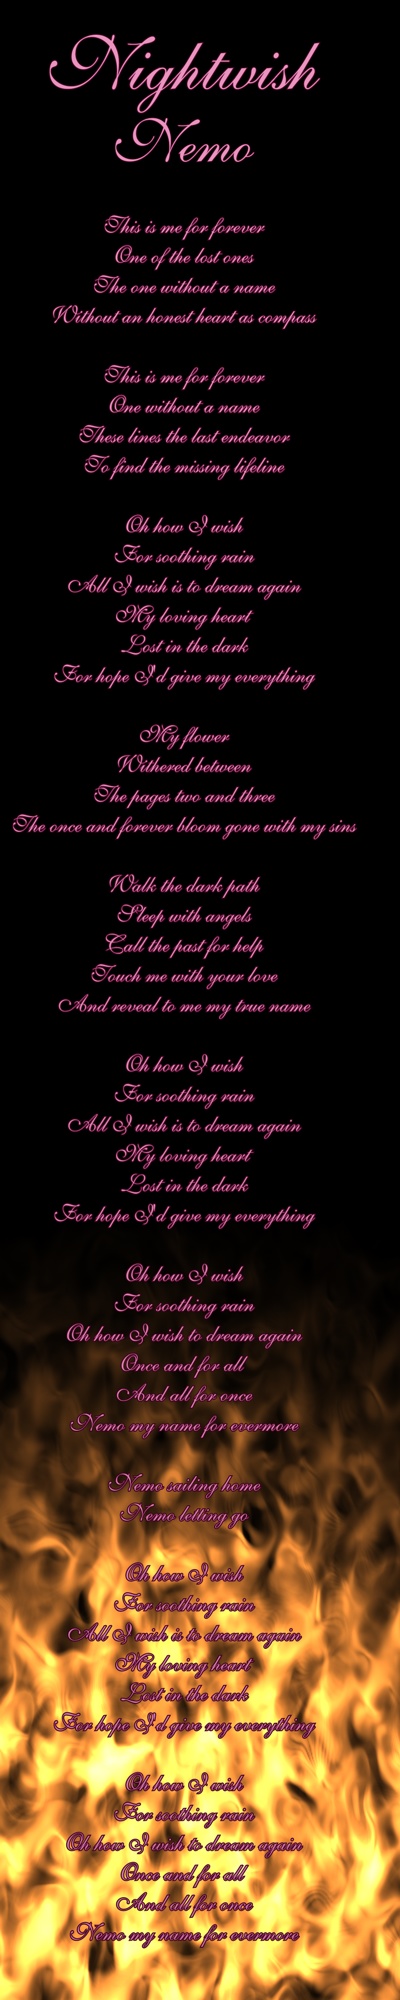 Nightwish Nemo lyrics by shaddam89 on DeviantArt